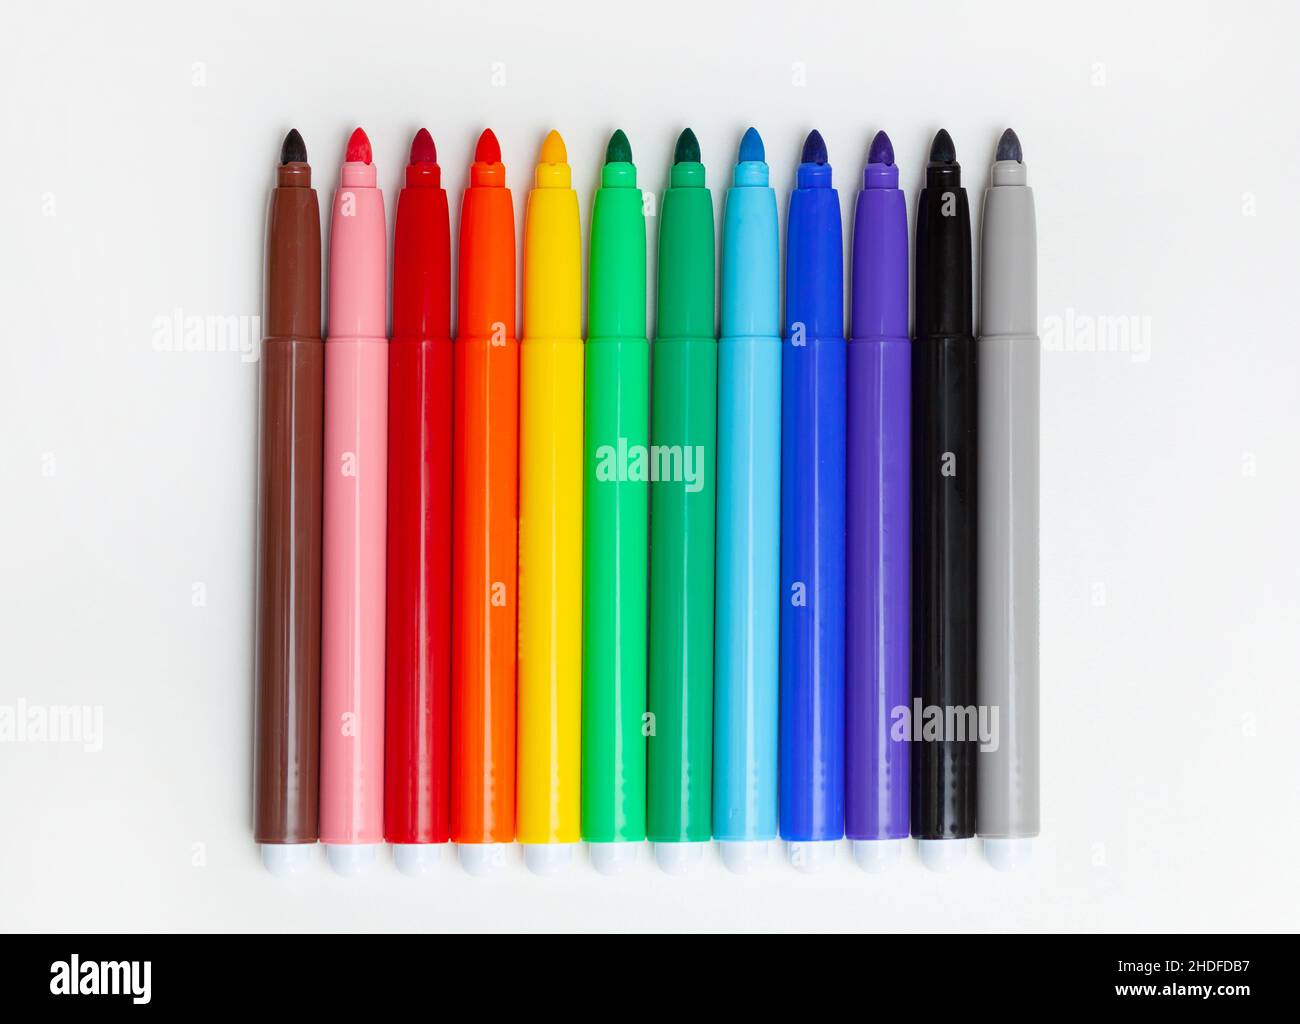 crayon, stylo feutre, crayons, stylos feutre Banque D'Images